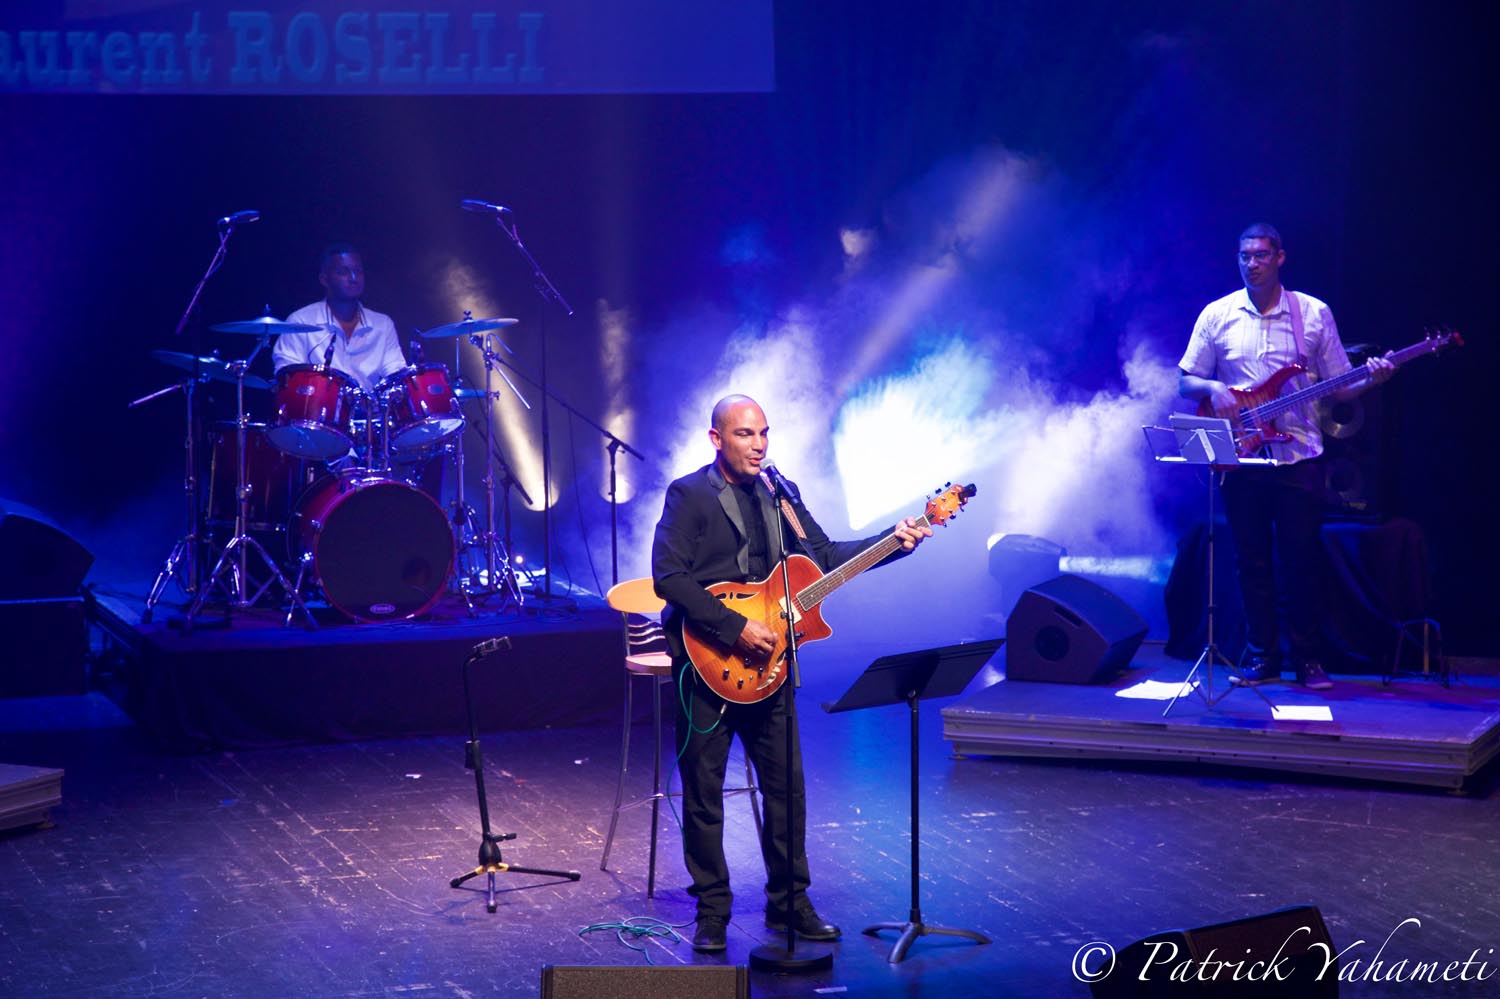 Concert de Laurent Roselli en hommage à son père